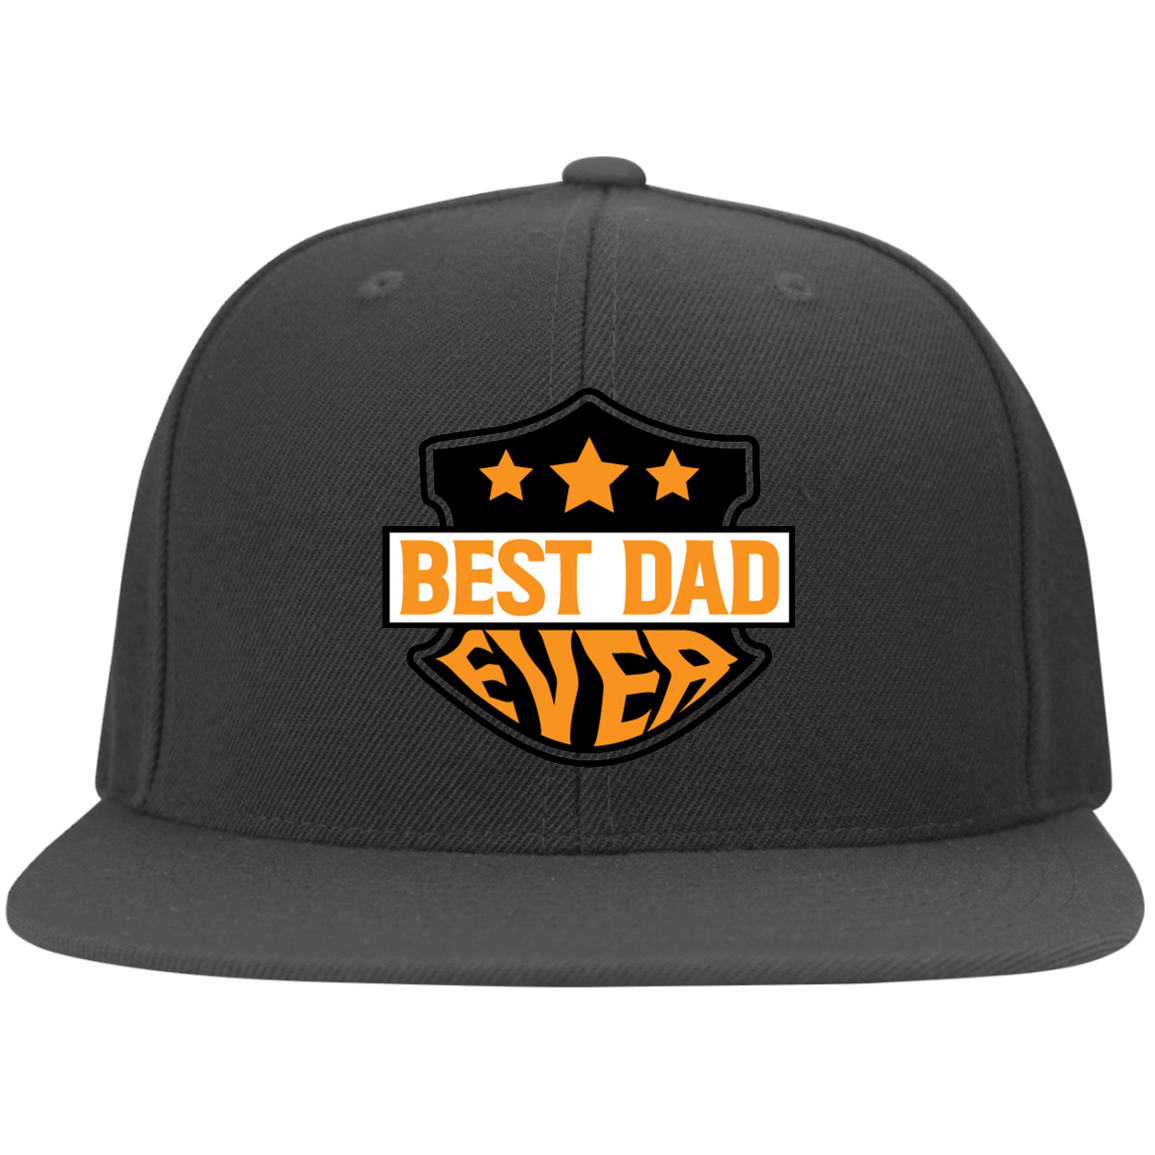 Best Dad Ever -Flat Bill Twill Flexfit Cap